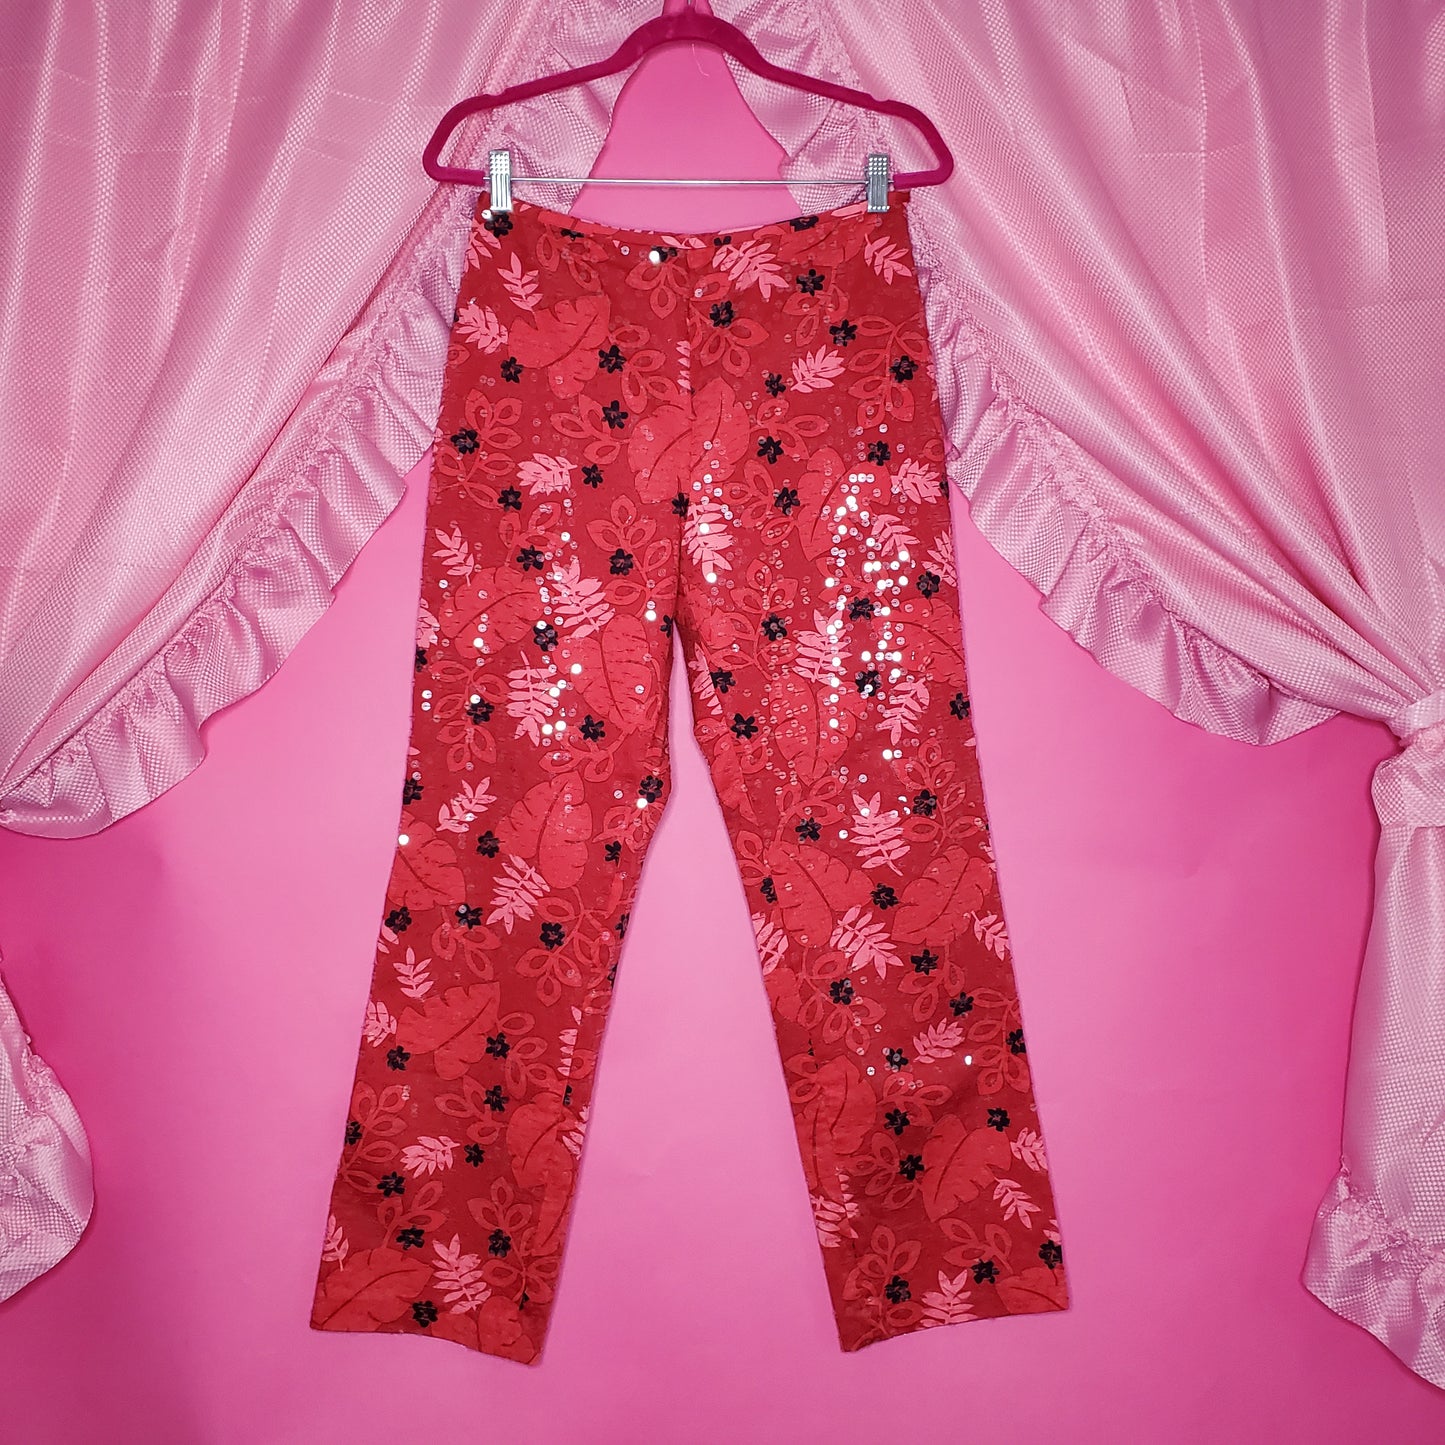 Sequin floral pants